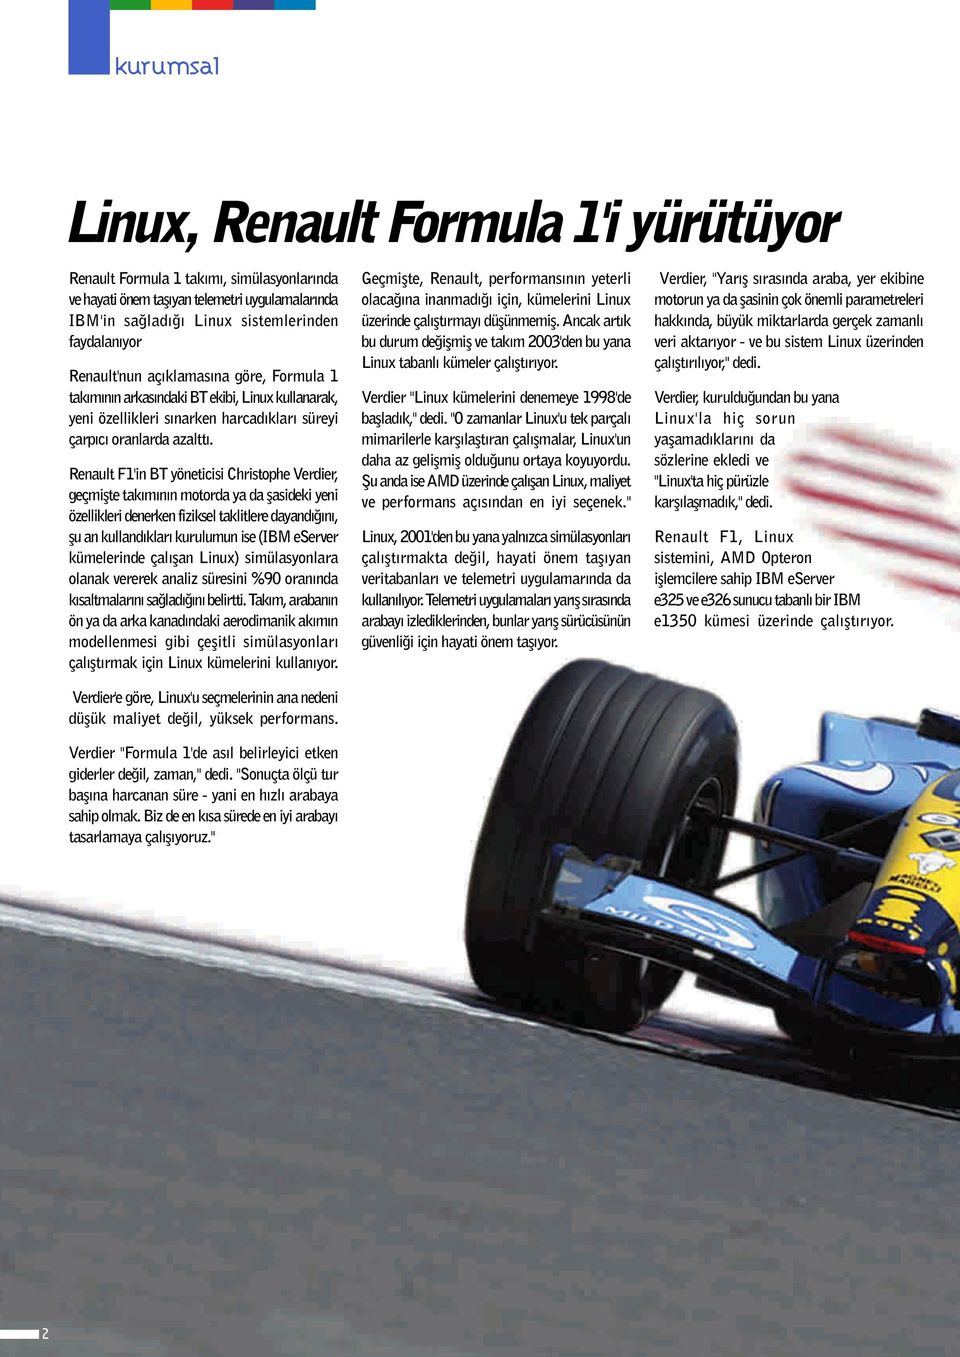 Renault F1'in BT yöneticisi Christophe Verdier, geçmiflte tak m n n motorda ya da flasideki yeni özellikleri denerken fiziksel taklitlere dayand n, flu an kulland klar kurulumun ise (IBM eserver